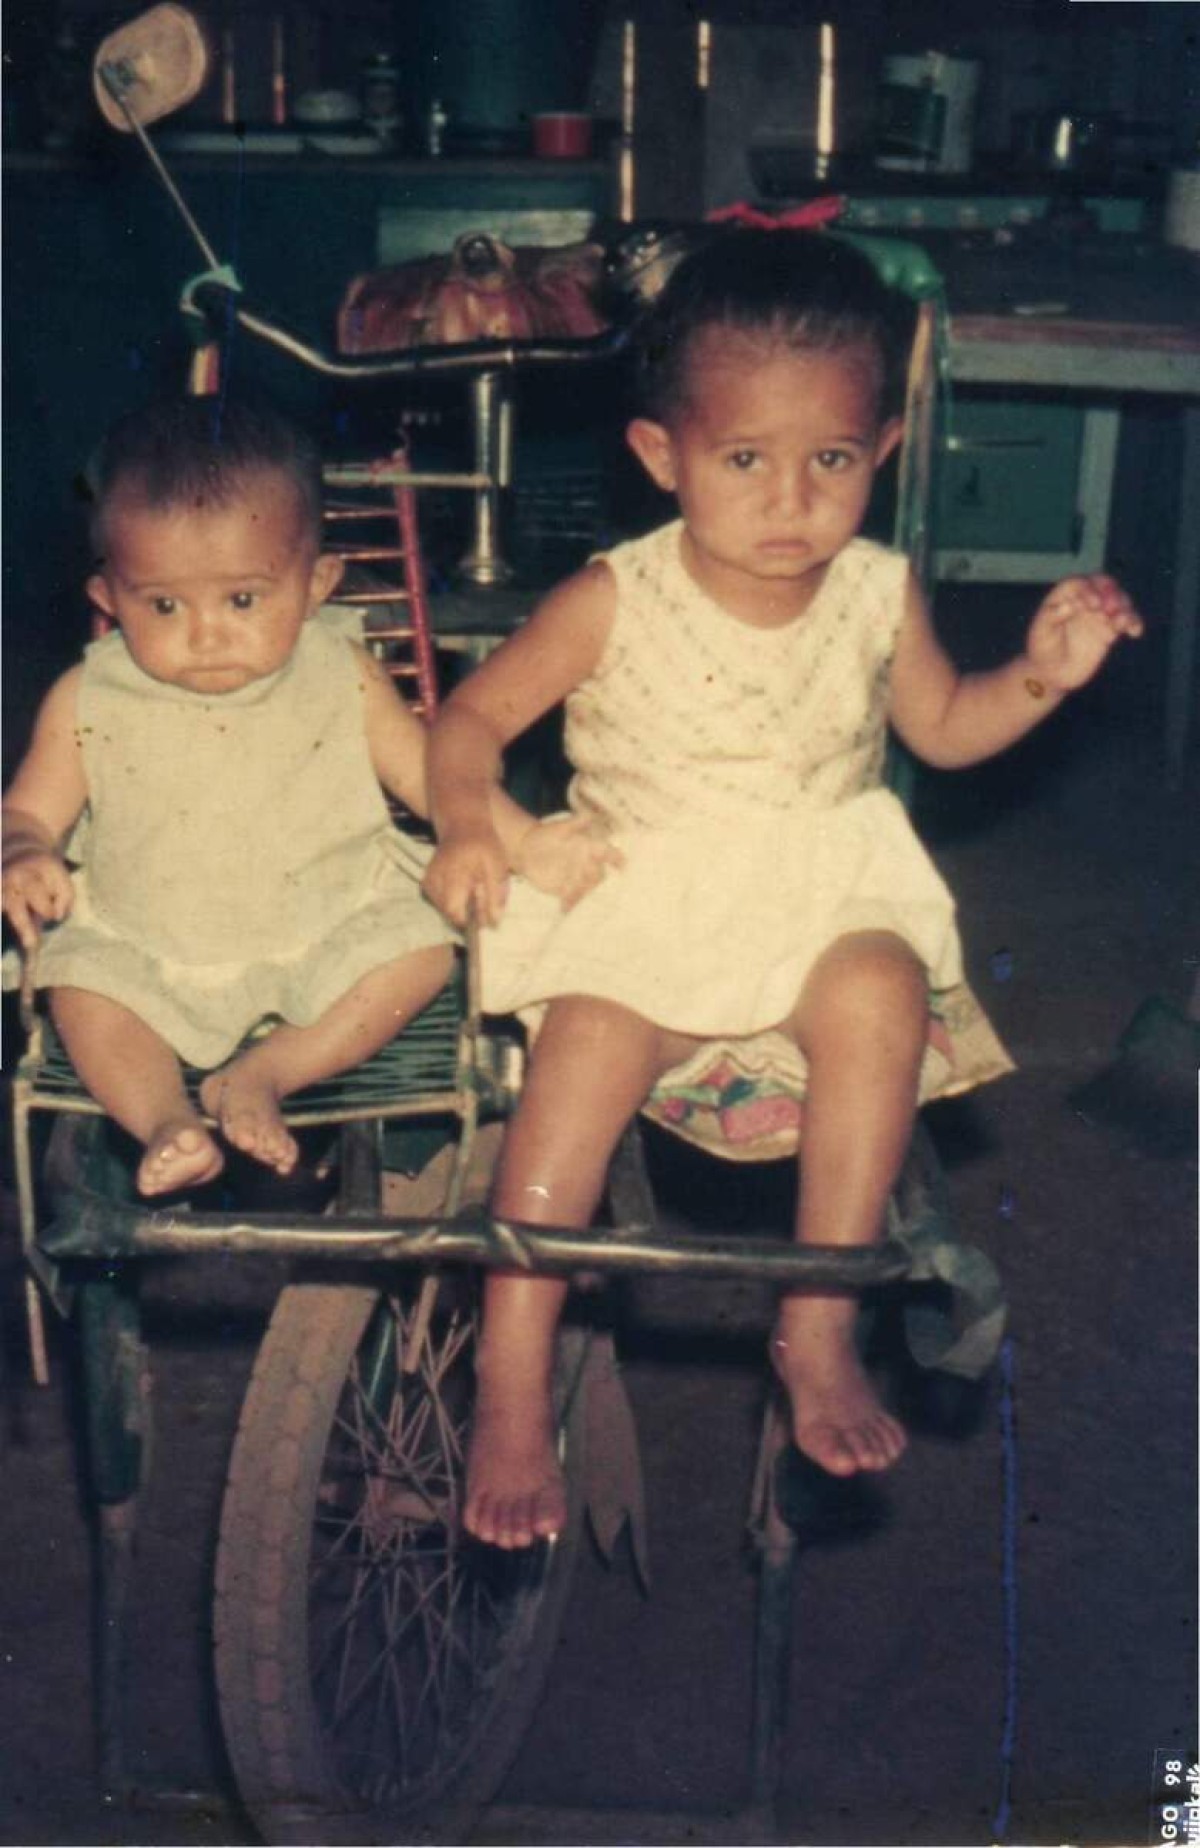 Gina Vieira Ponte de Albuquerque, à esquerda, aos 10 meses, em cima da bicicleta que o pai usava para vender bolachões e sustentar a família